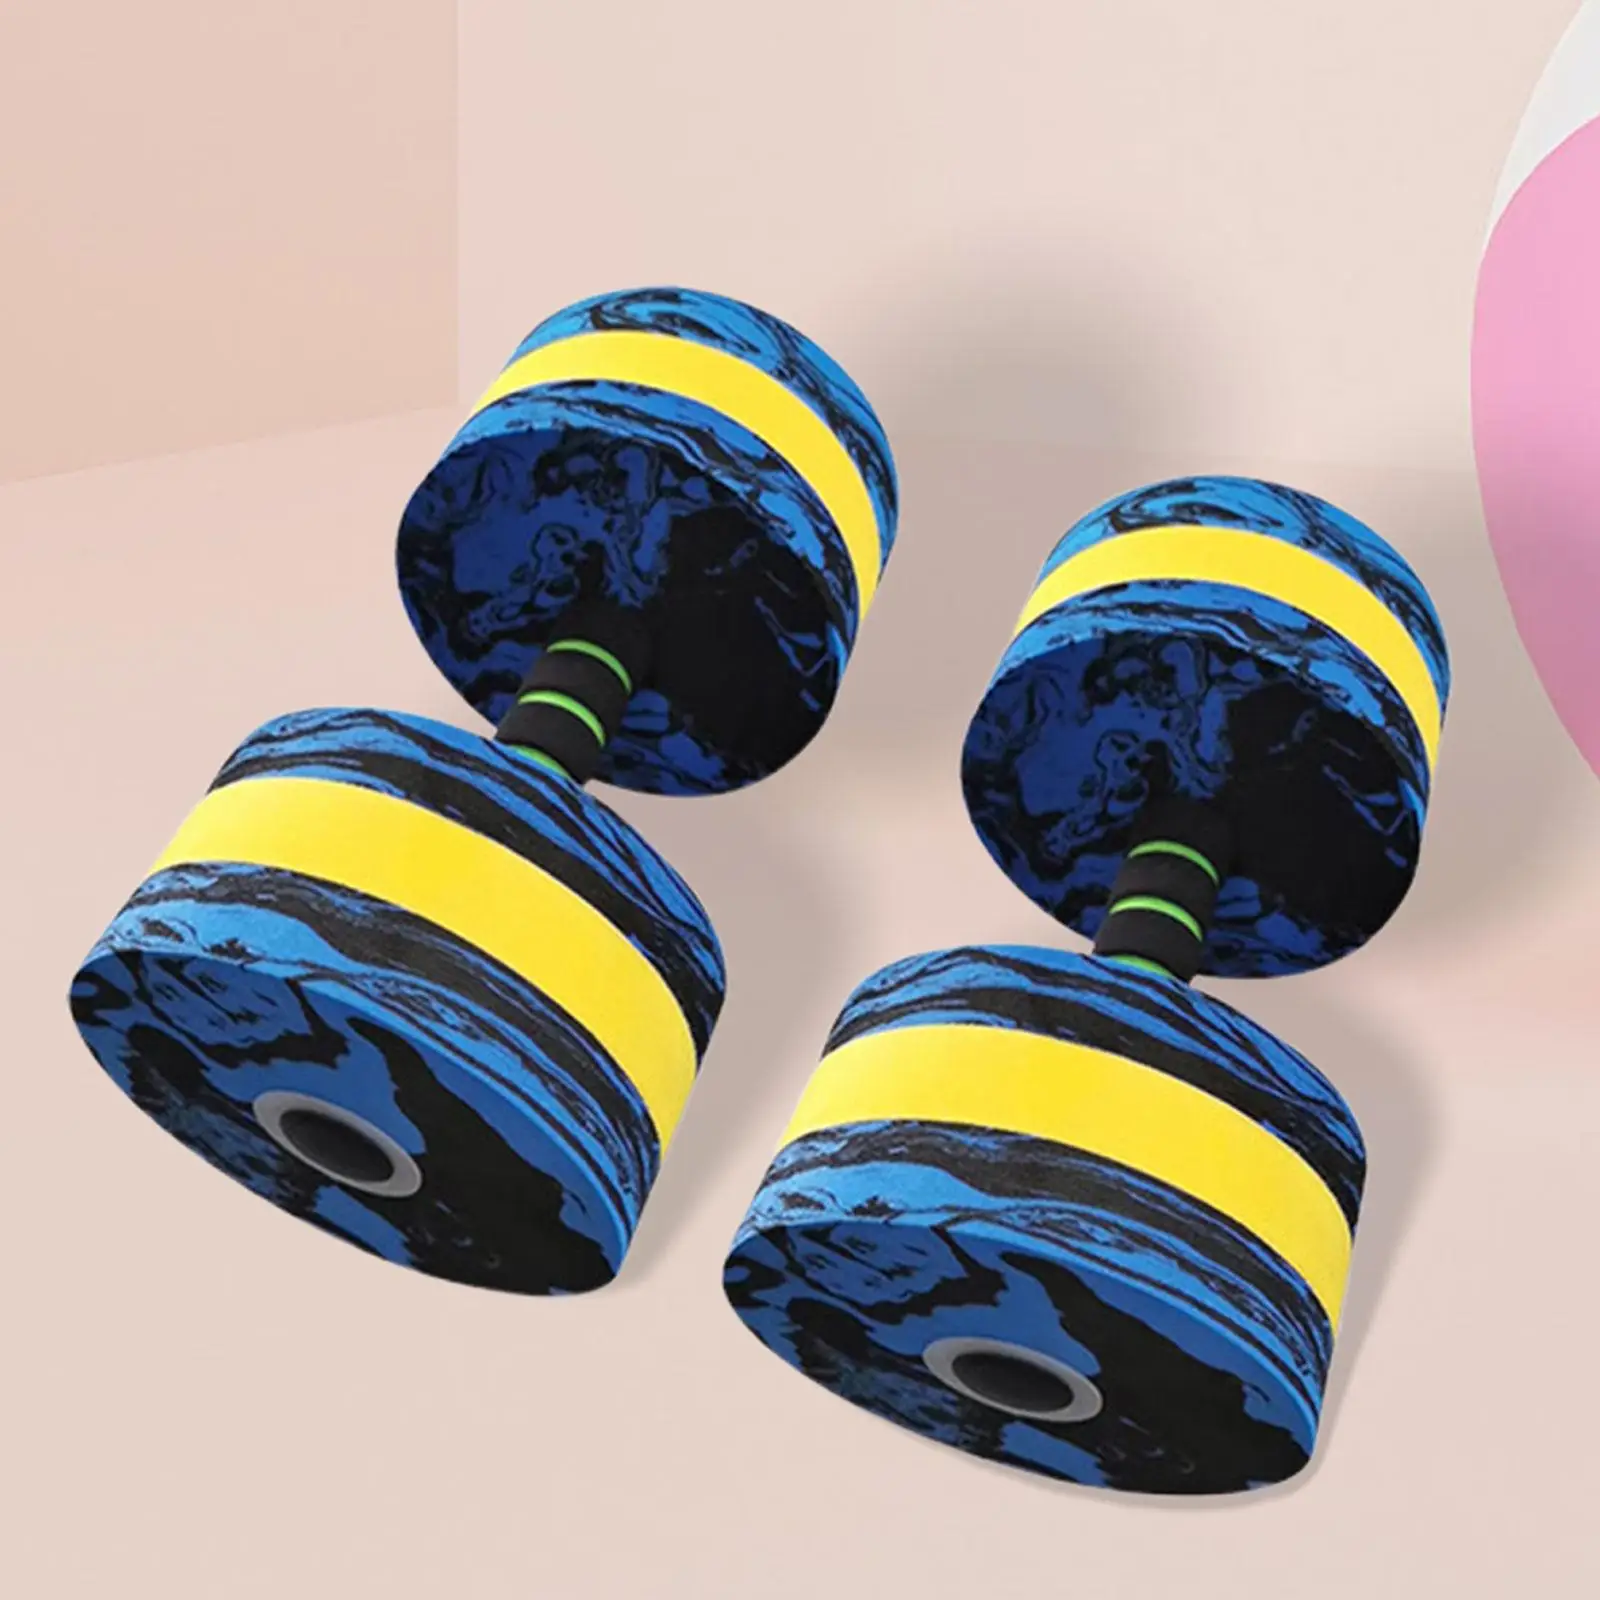 2Pcs Aquatic Dumbbells Fitness Barbells Portable Pool Resistance Foam Water Dumbbells for Indoor Aquatic Exercise Kids Adults